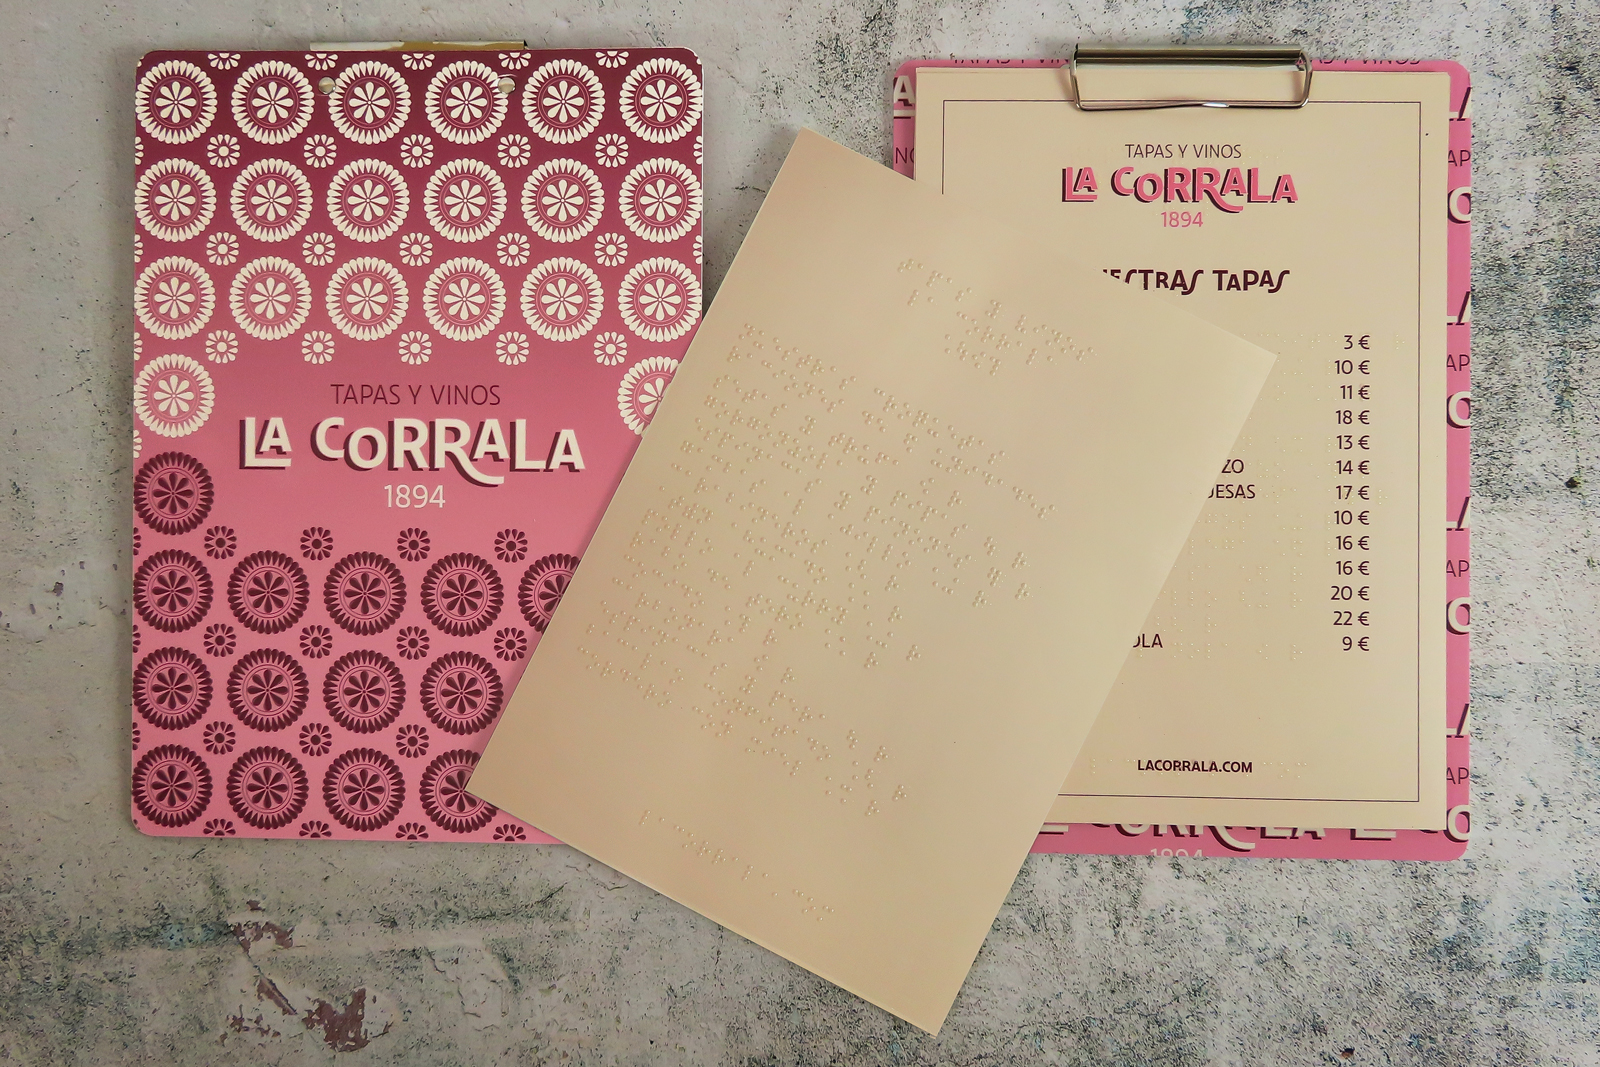 Diseño inclusivo con braille en carta restaurante